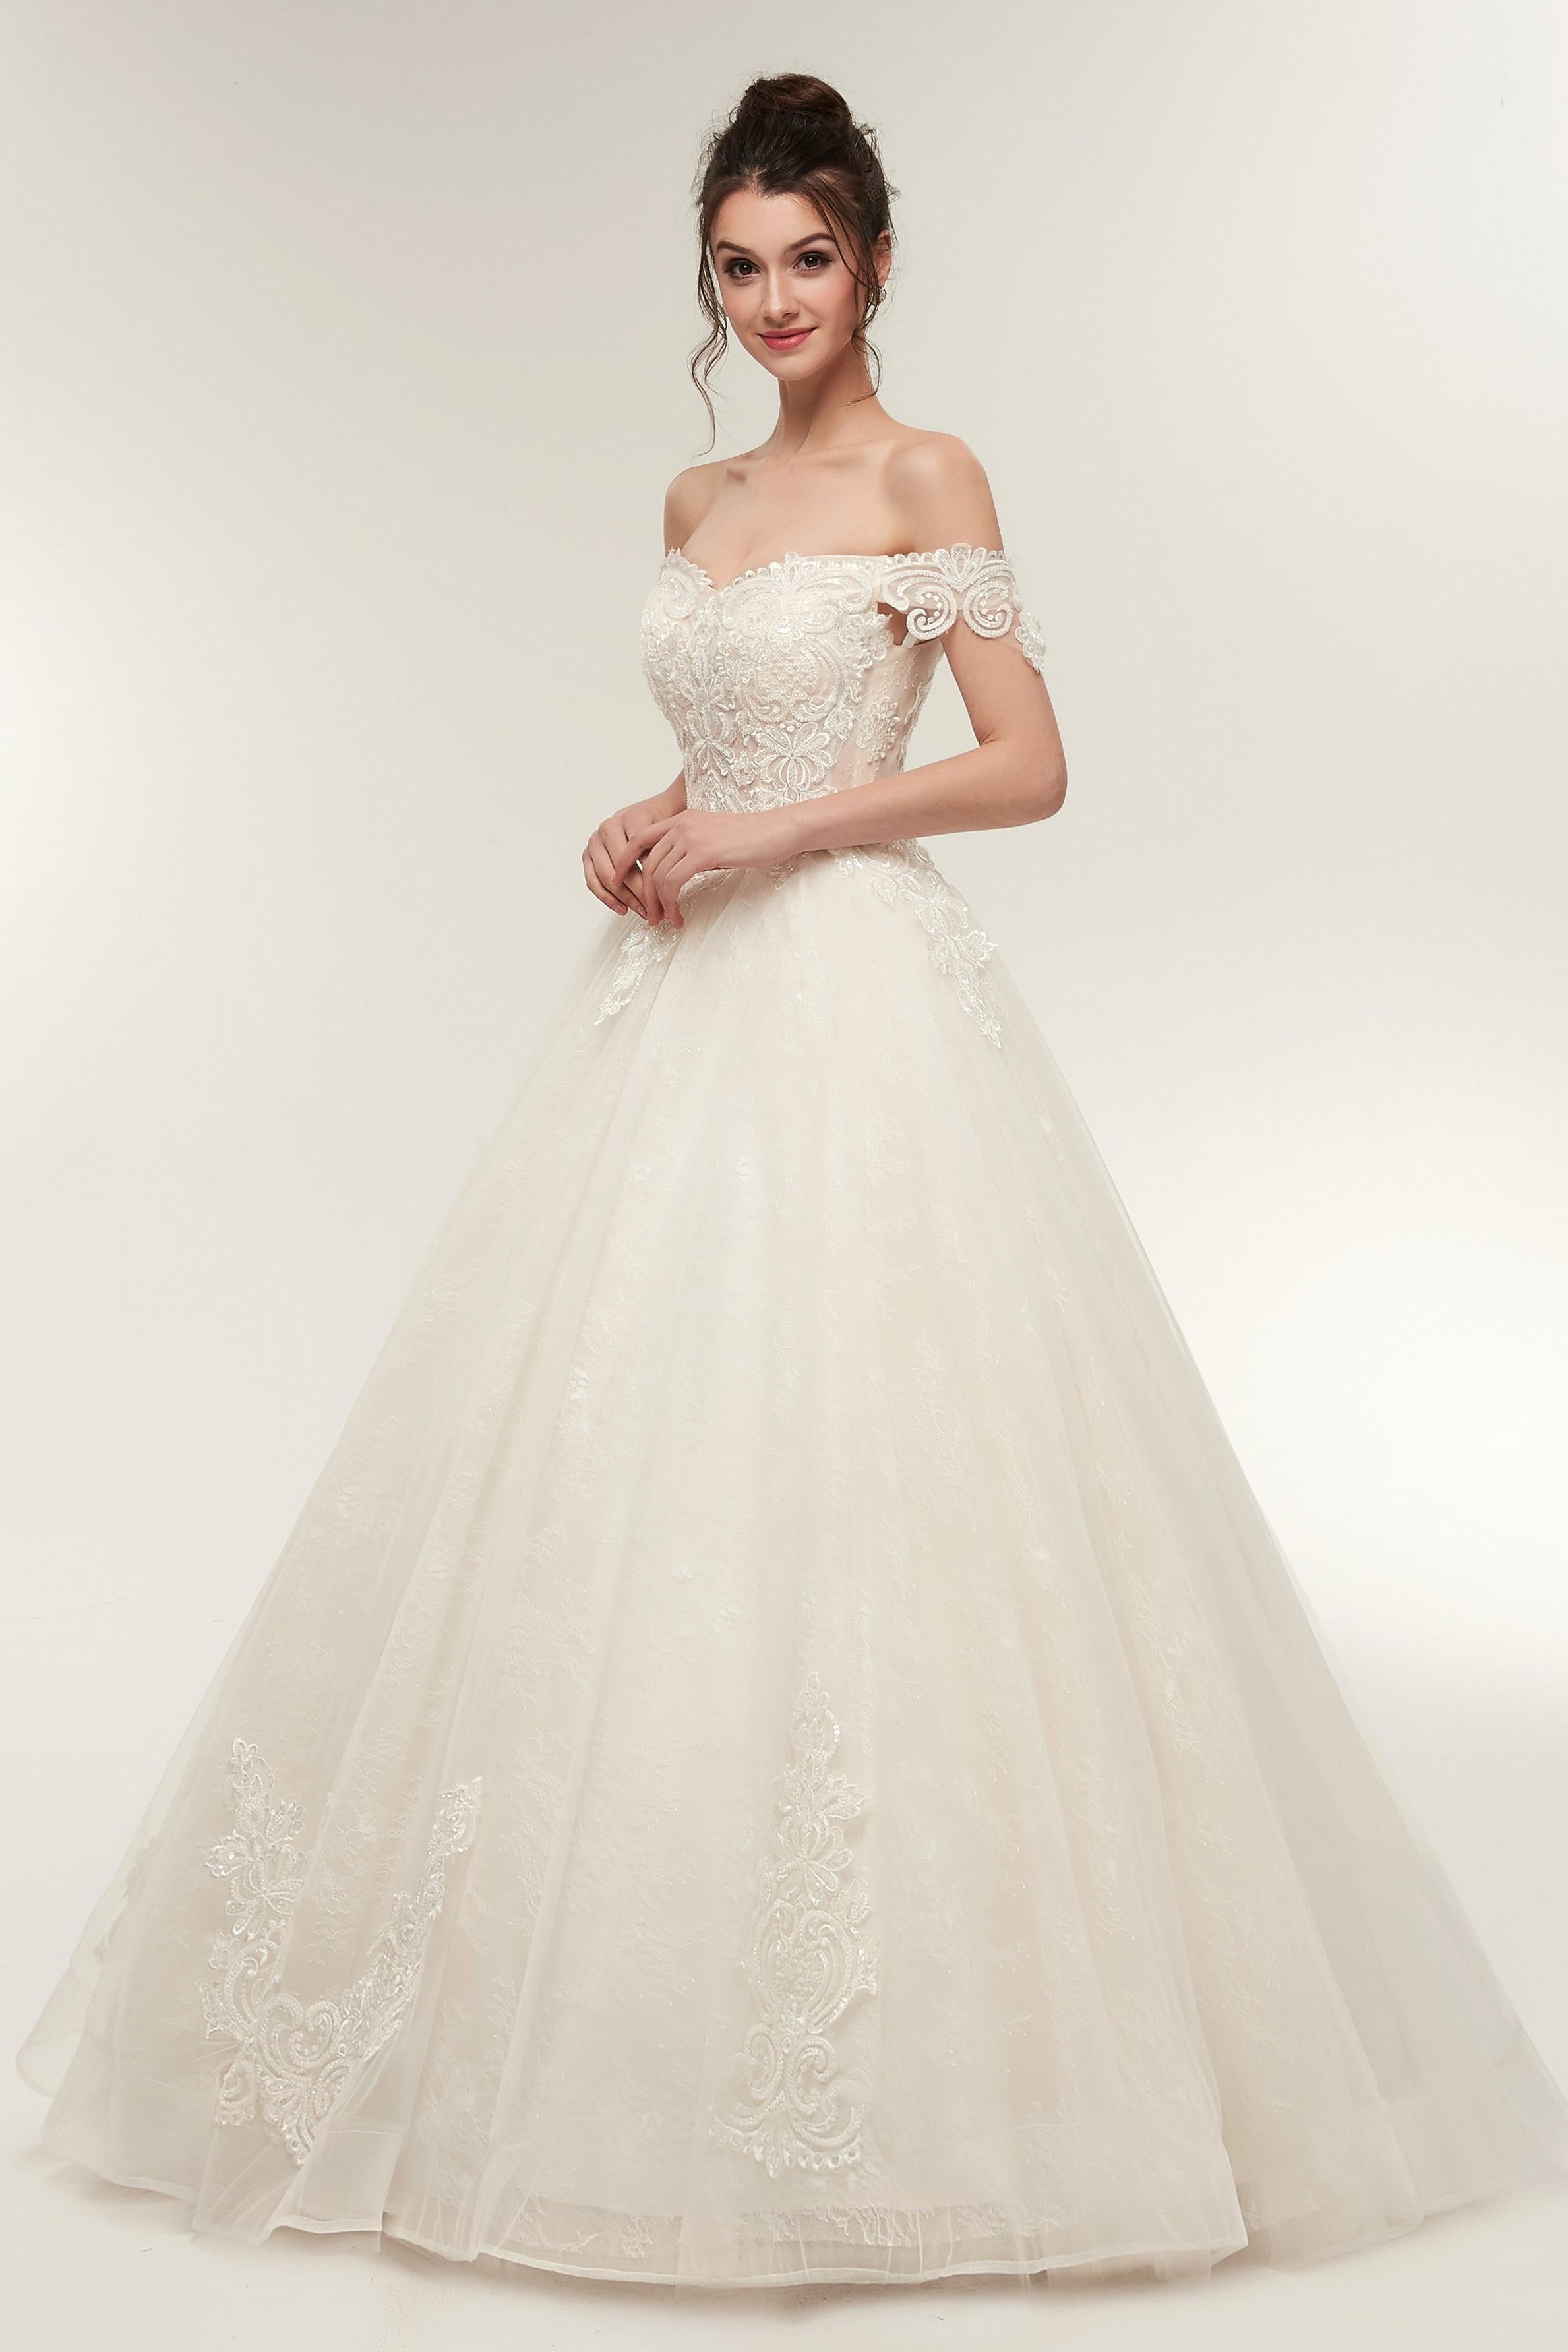 Elegant Off-Shoulder Light Champagne A-line Floor Length Lace Tulle Wedding Dresses Bridal Dress AS50638